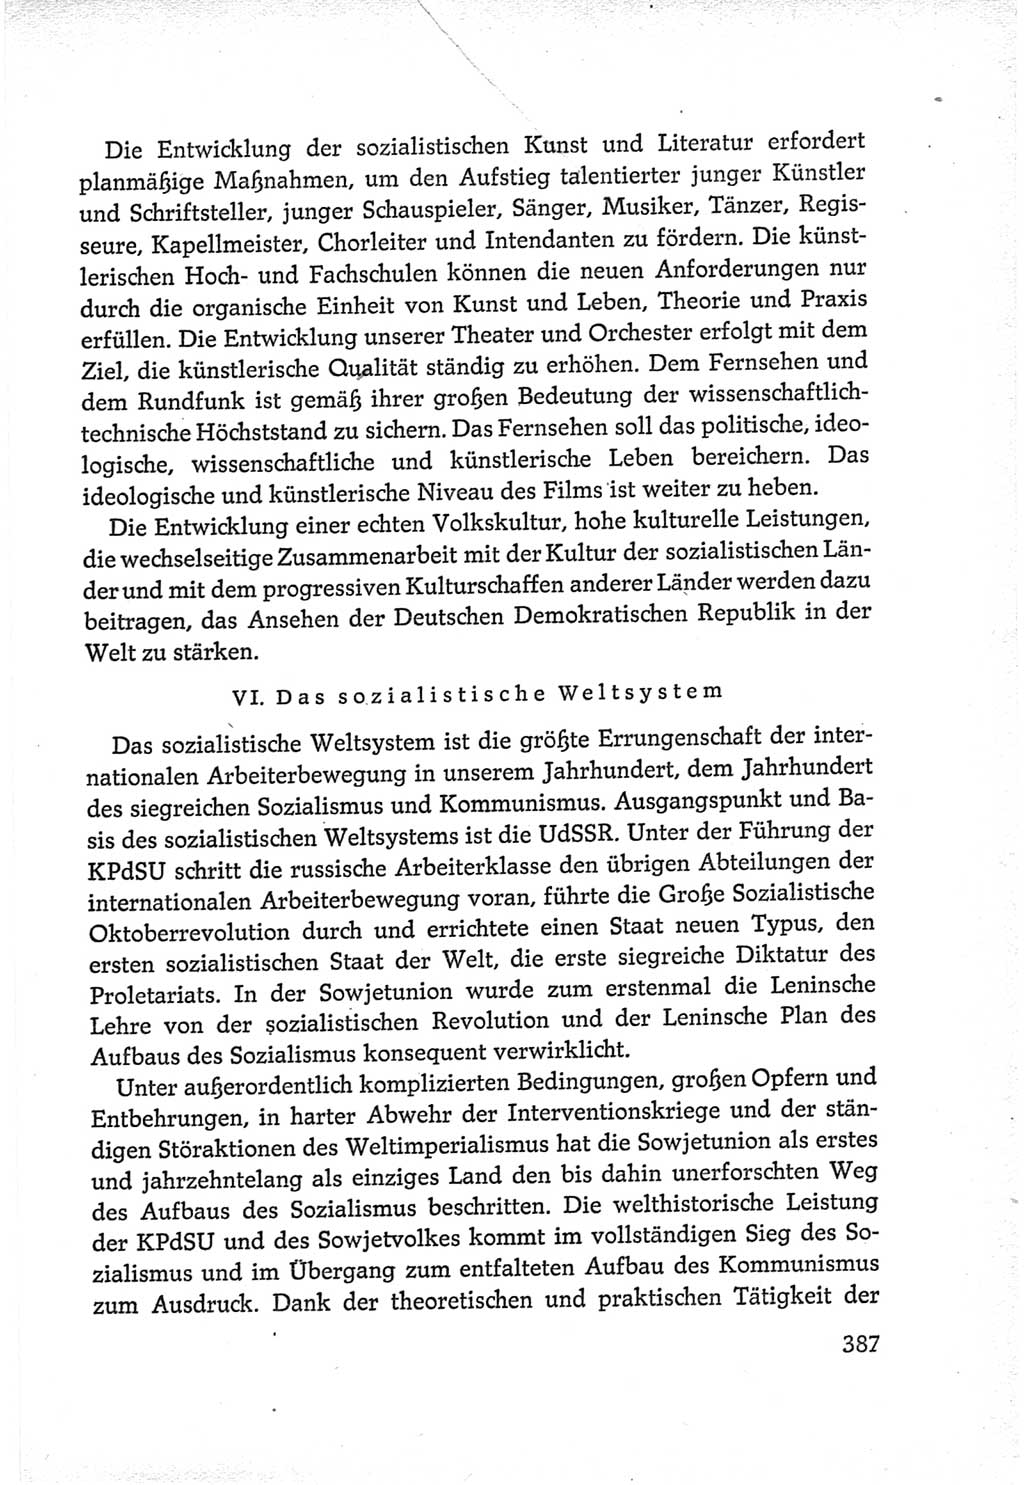 Protokoll der Verhandlungen des Ⅵ. Parteitages der Sozialistischen Einheitspartei Deutschlands (SED) [Deutsche Demokratische Republik (DDR)] 1963, Band Ⅳ, Seite 387 (Prot. Verh. Ⅵ. PT SED DDR 1963, Bd. Ⅳ, S. 387)